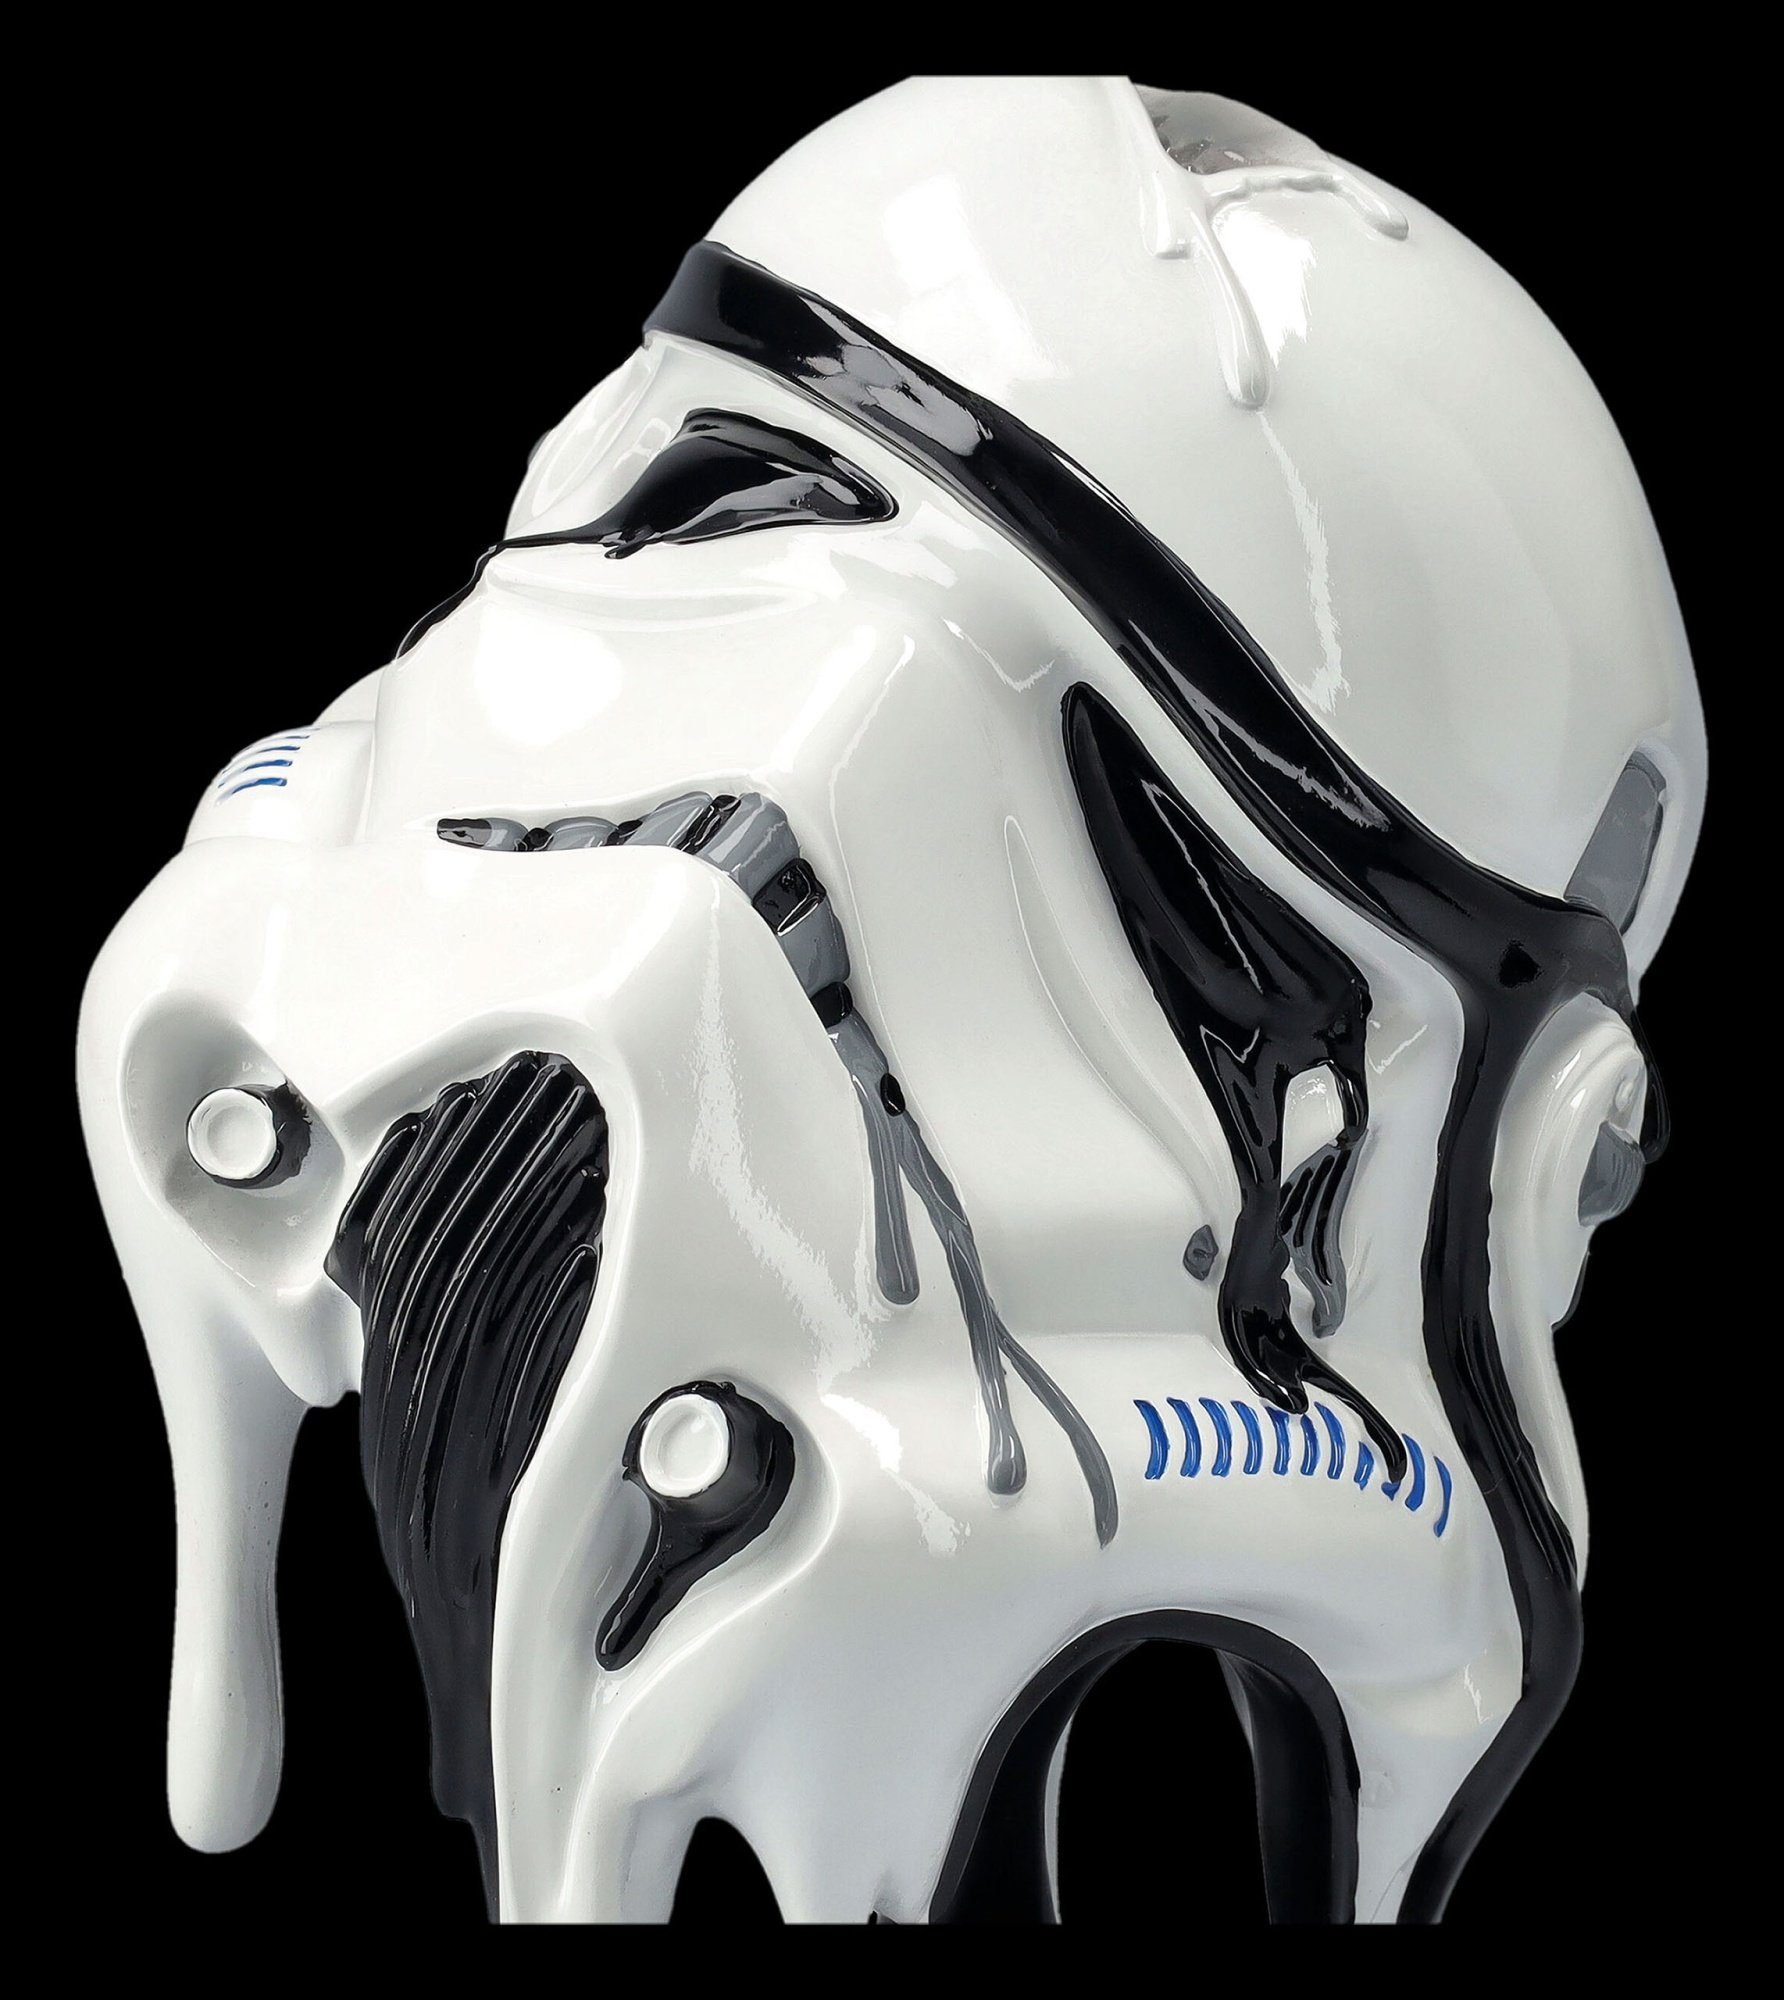 To Dekoobjekt GmbH Too Helm Stormtrooper Sci-Fi Shop Figuren - Hot Handle - Merchandise Dekoration